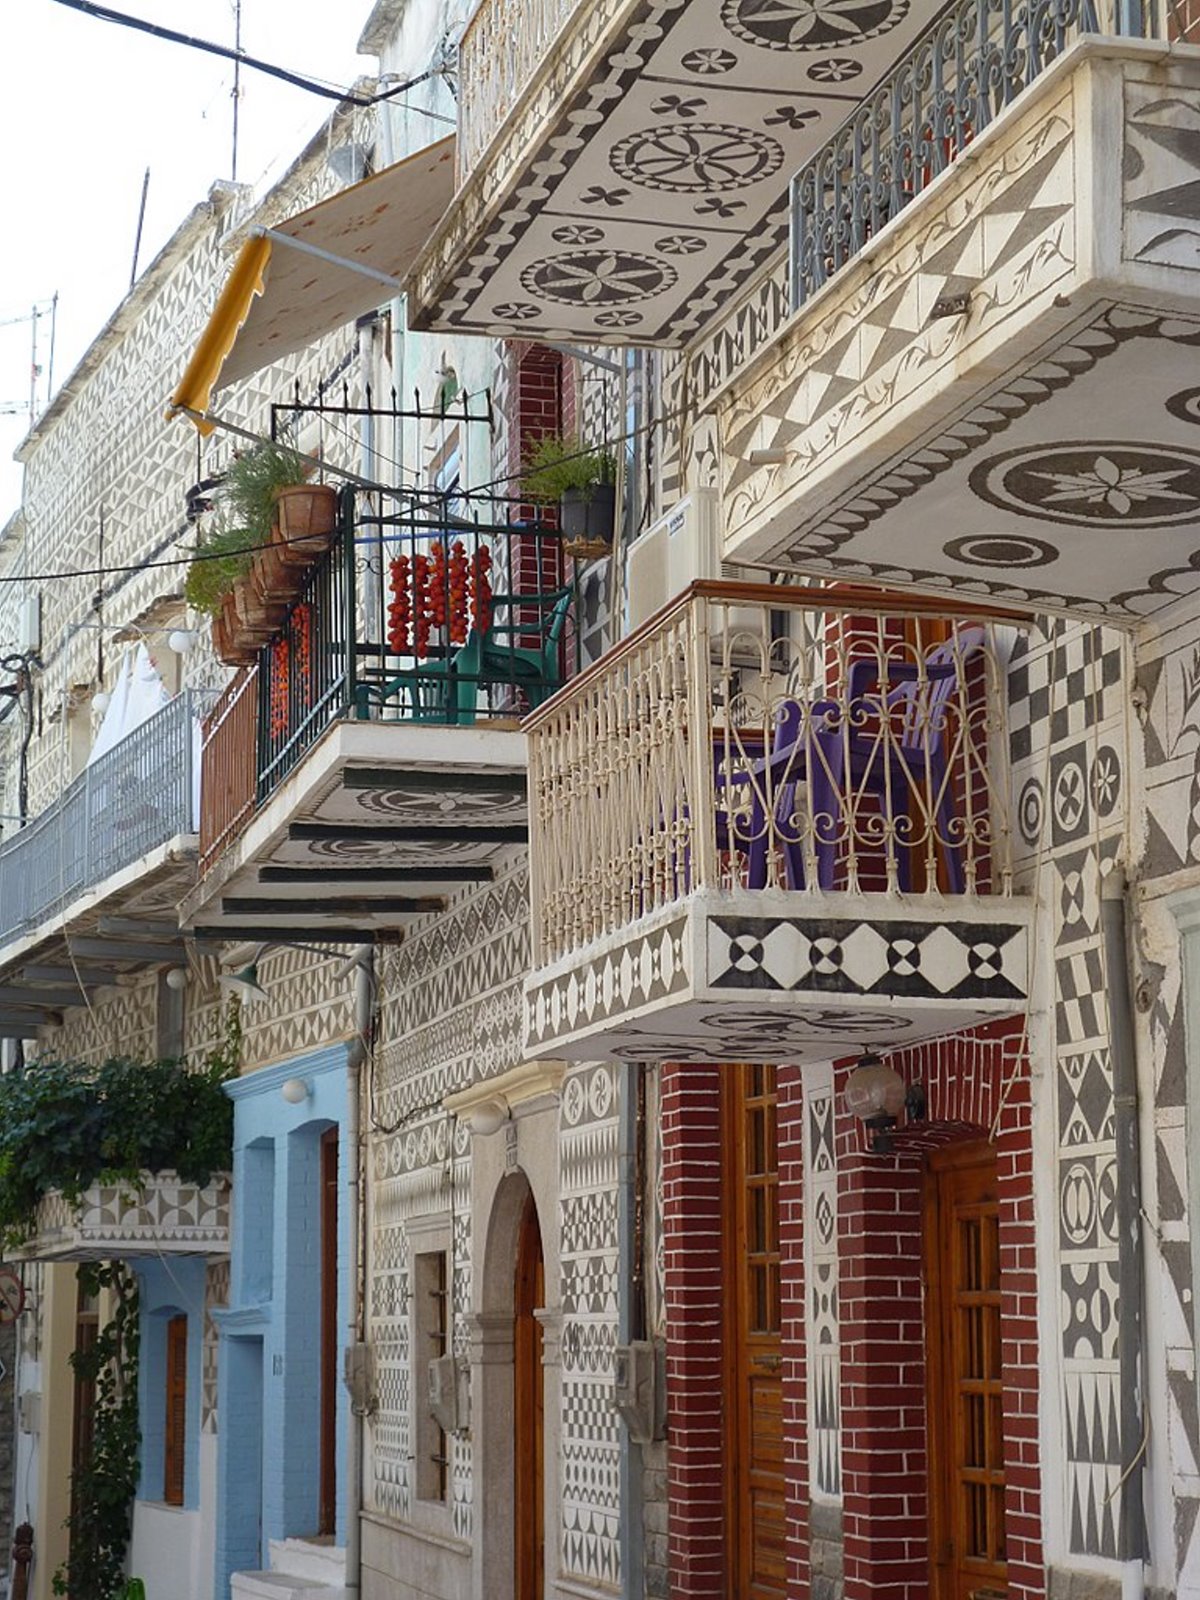 Πυργί χωριό Χίος με τοιχογραφίες σαν κέντημα